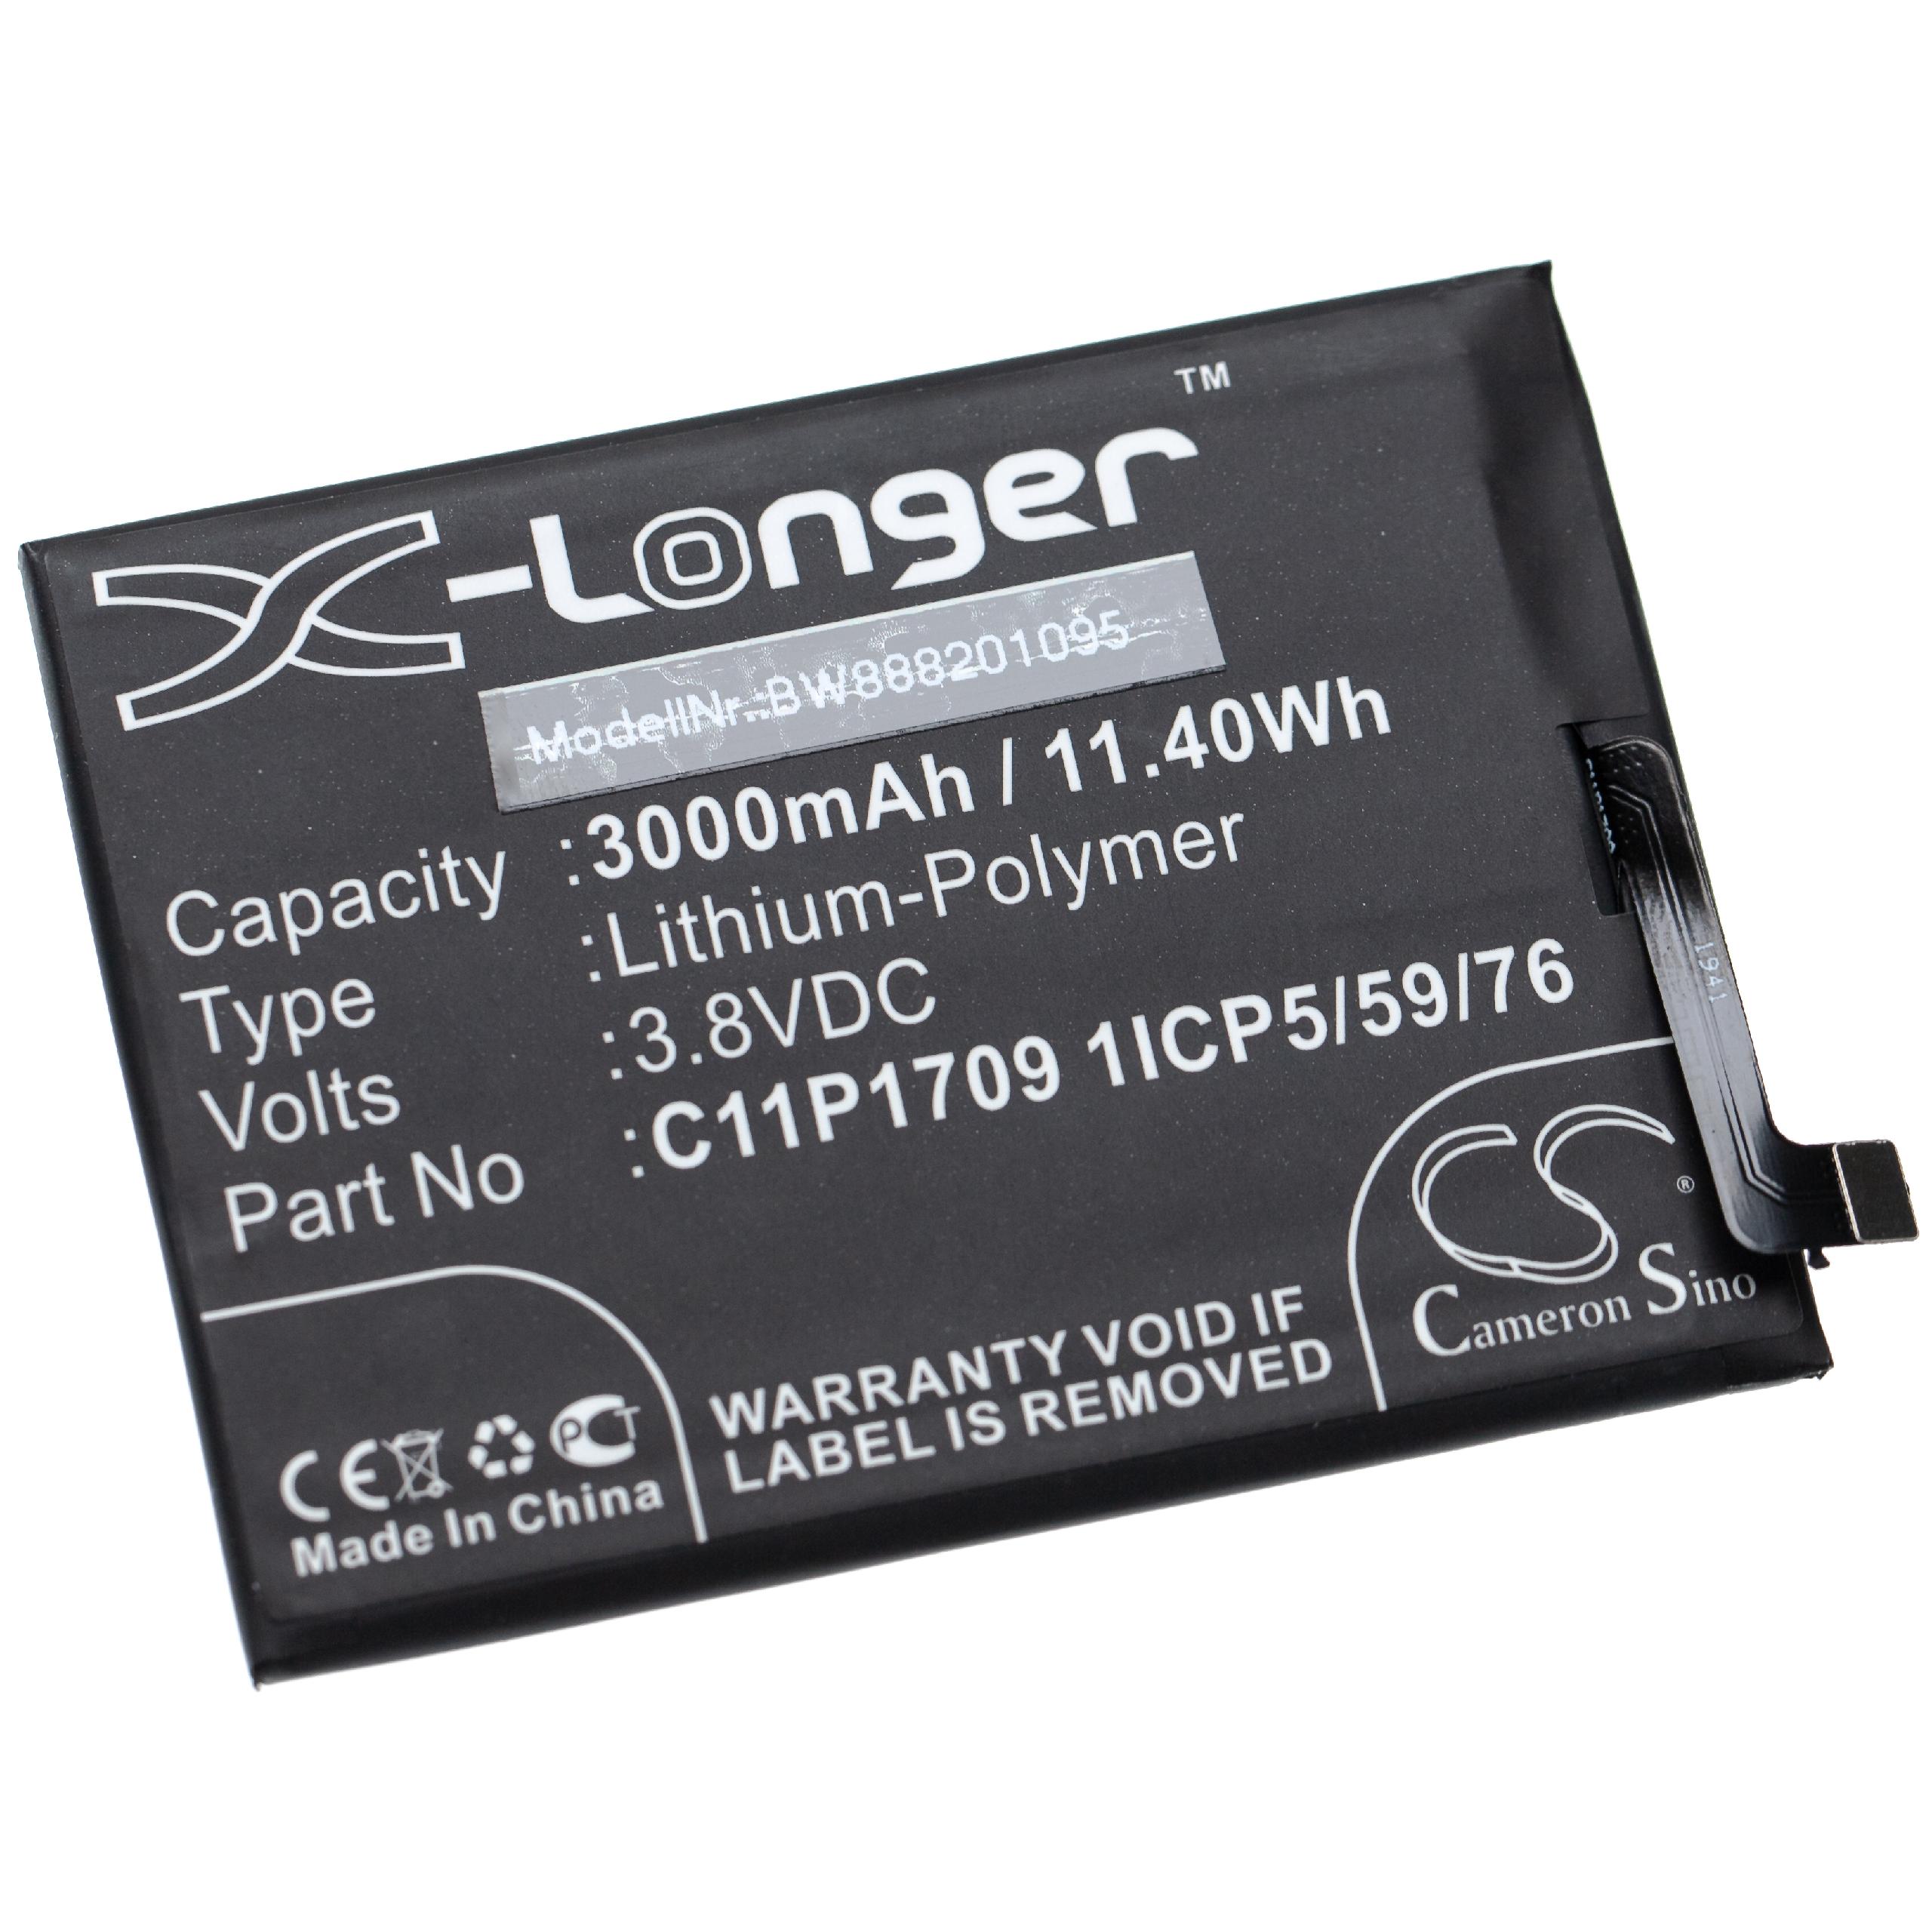 Batterie remplace Asus C11P1709 1ICP5/59/76 pour téléphone portable - 3000mAh, 3,8V, Li-polymère